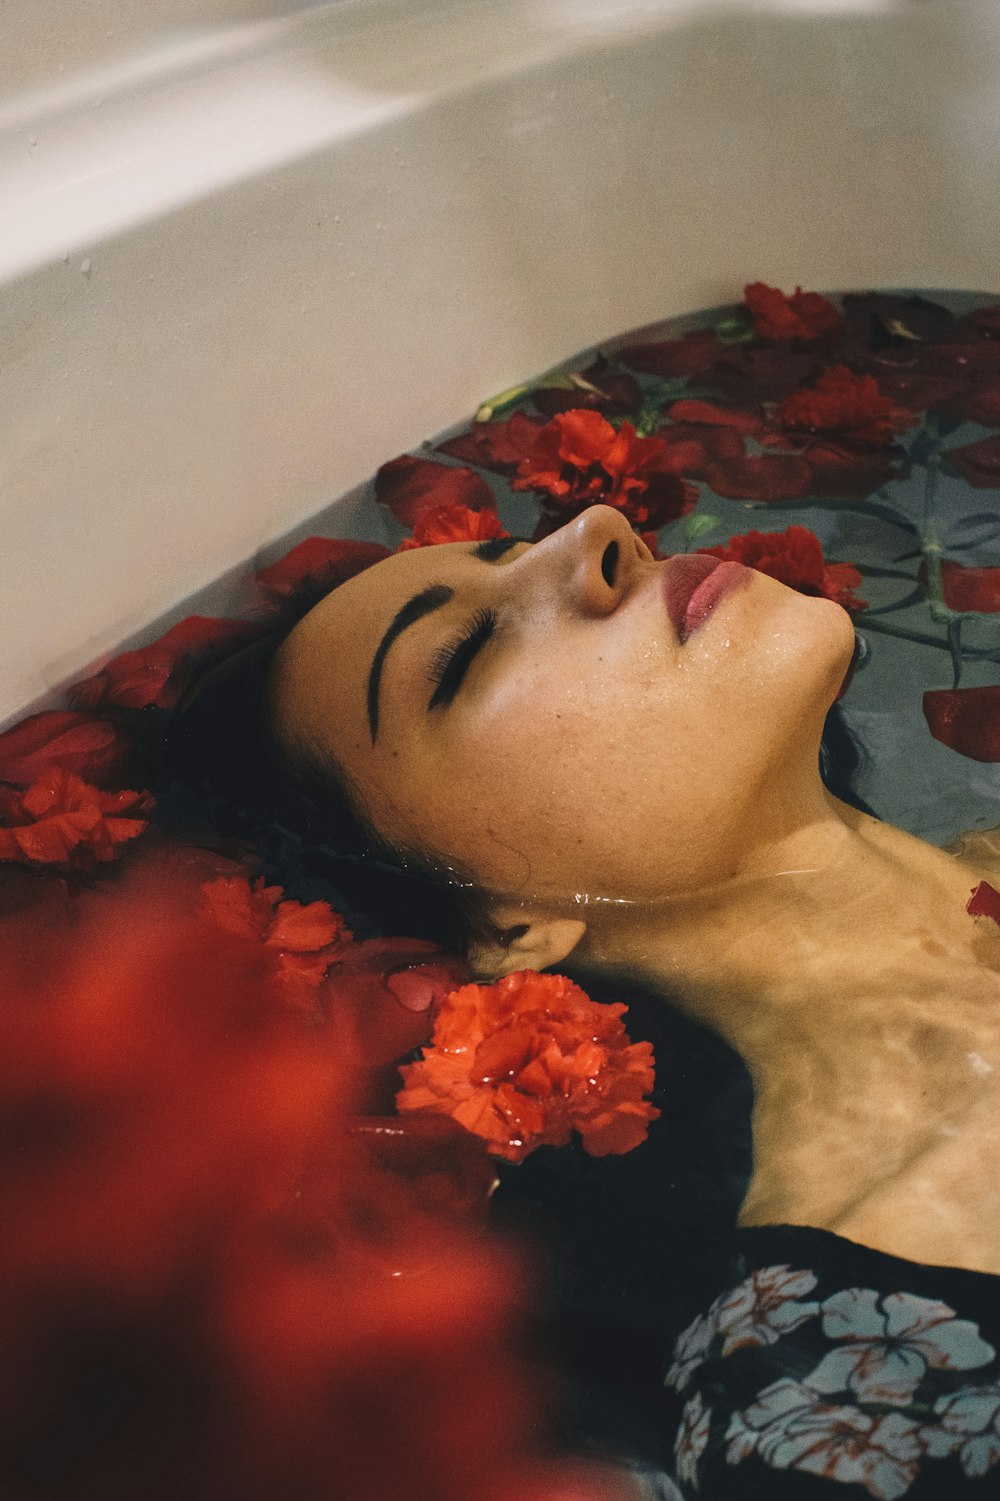 femme en robe à fleurs grise et noire immerger dans la baignoire avec des fleurs rouges